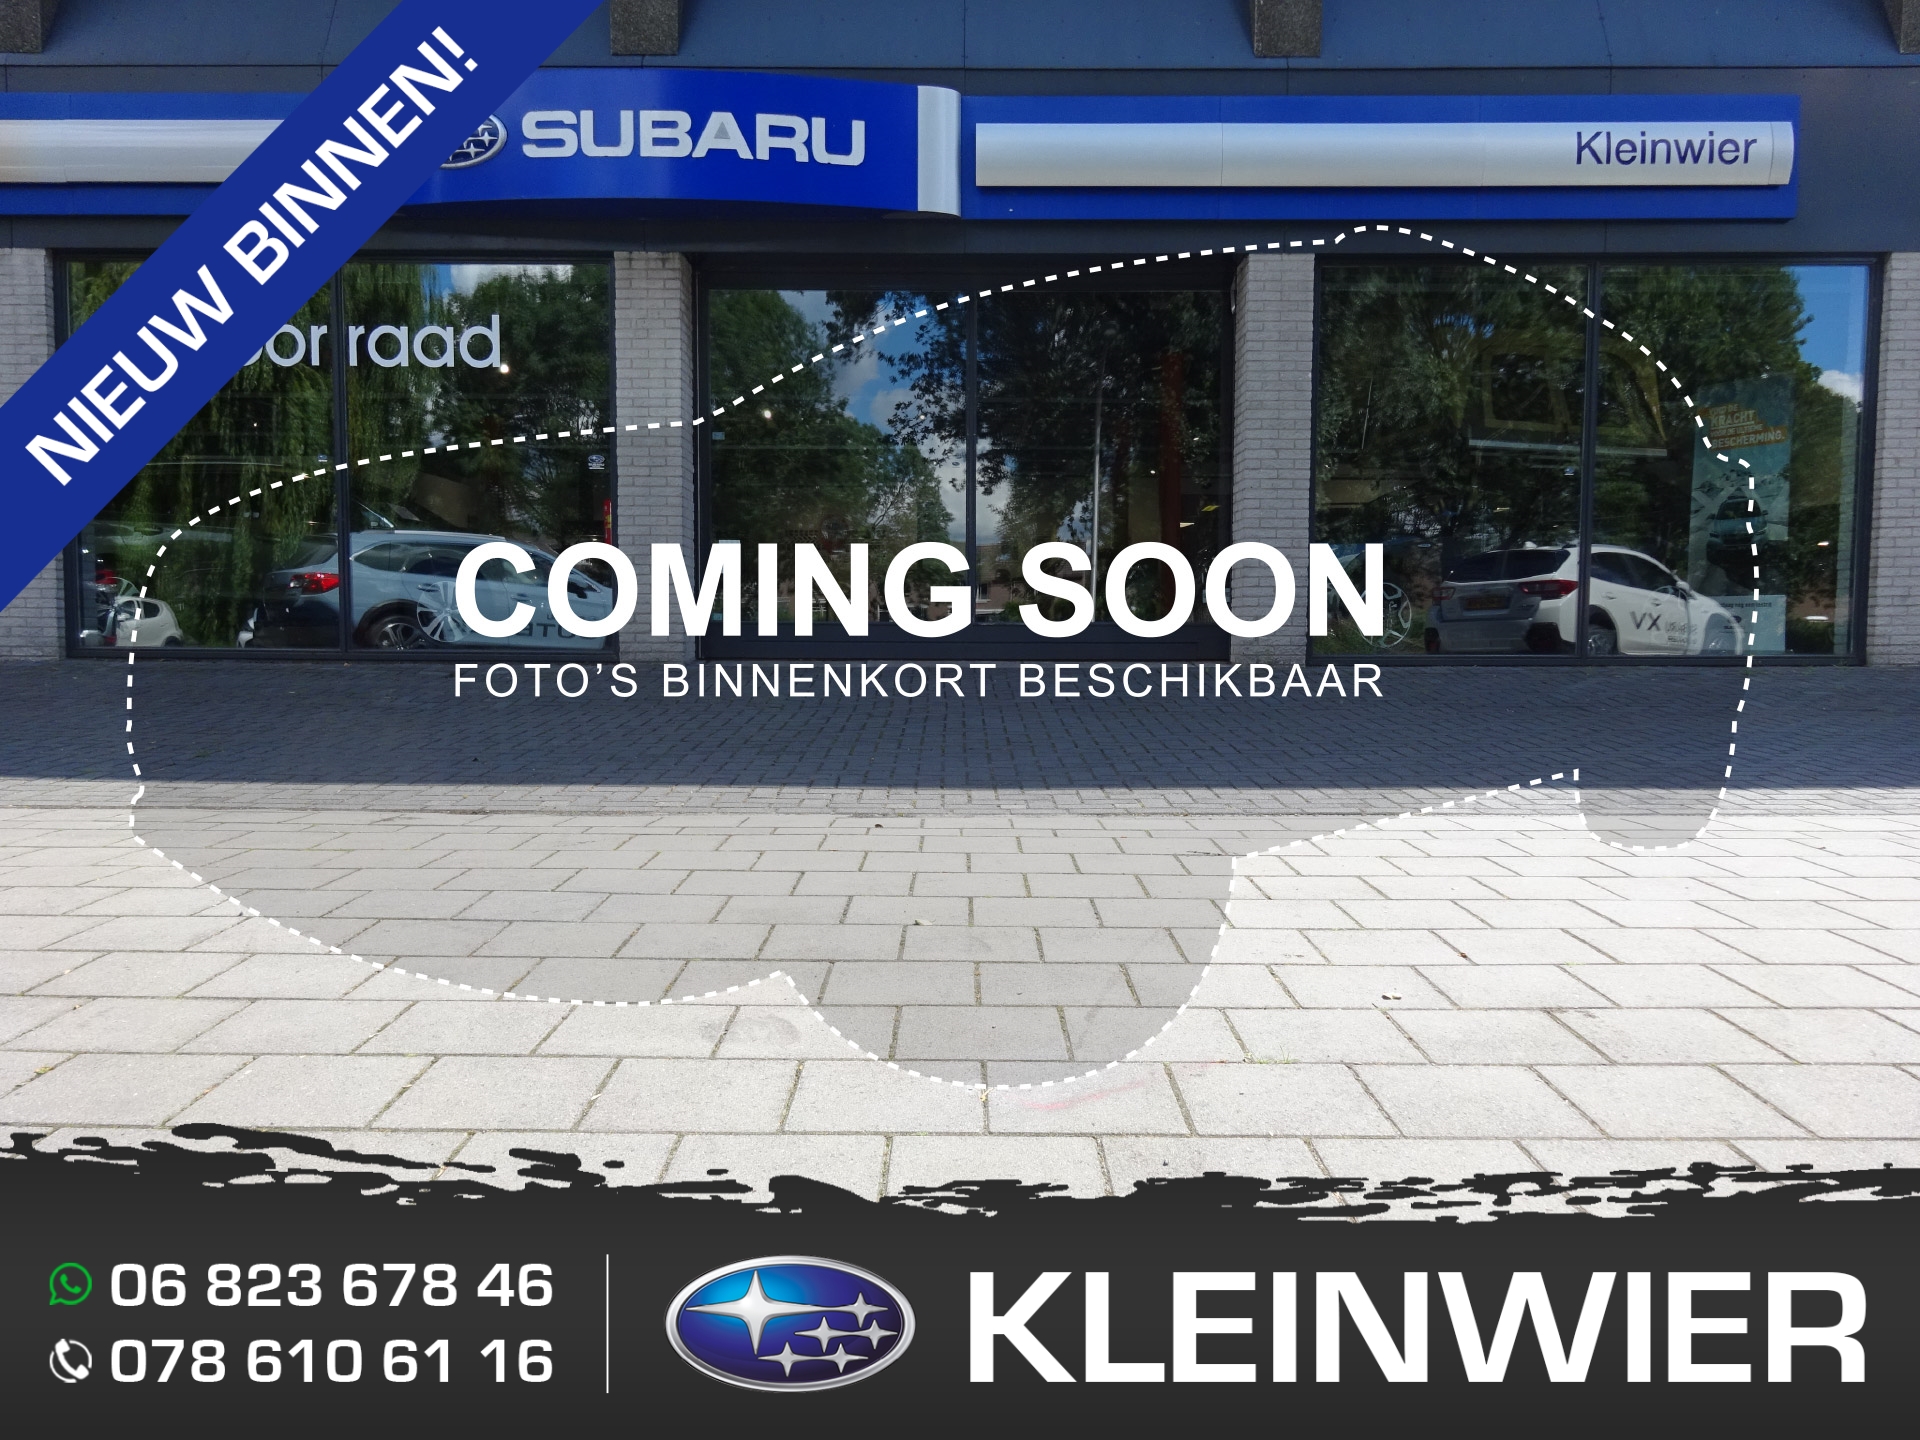 Subaru Xv 1.6i 114pk AWD Lineartronic CVT Leder Business Edition bij viaBOVAG.nl